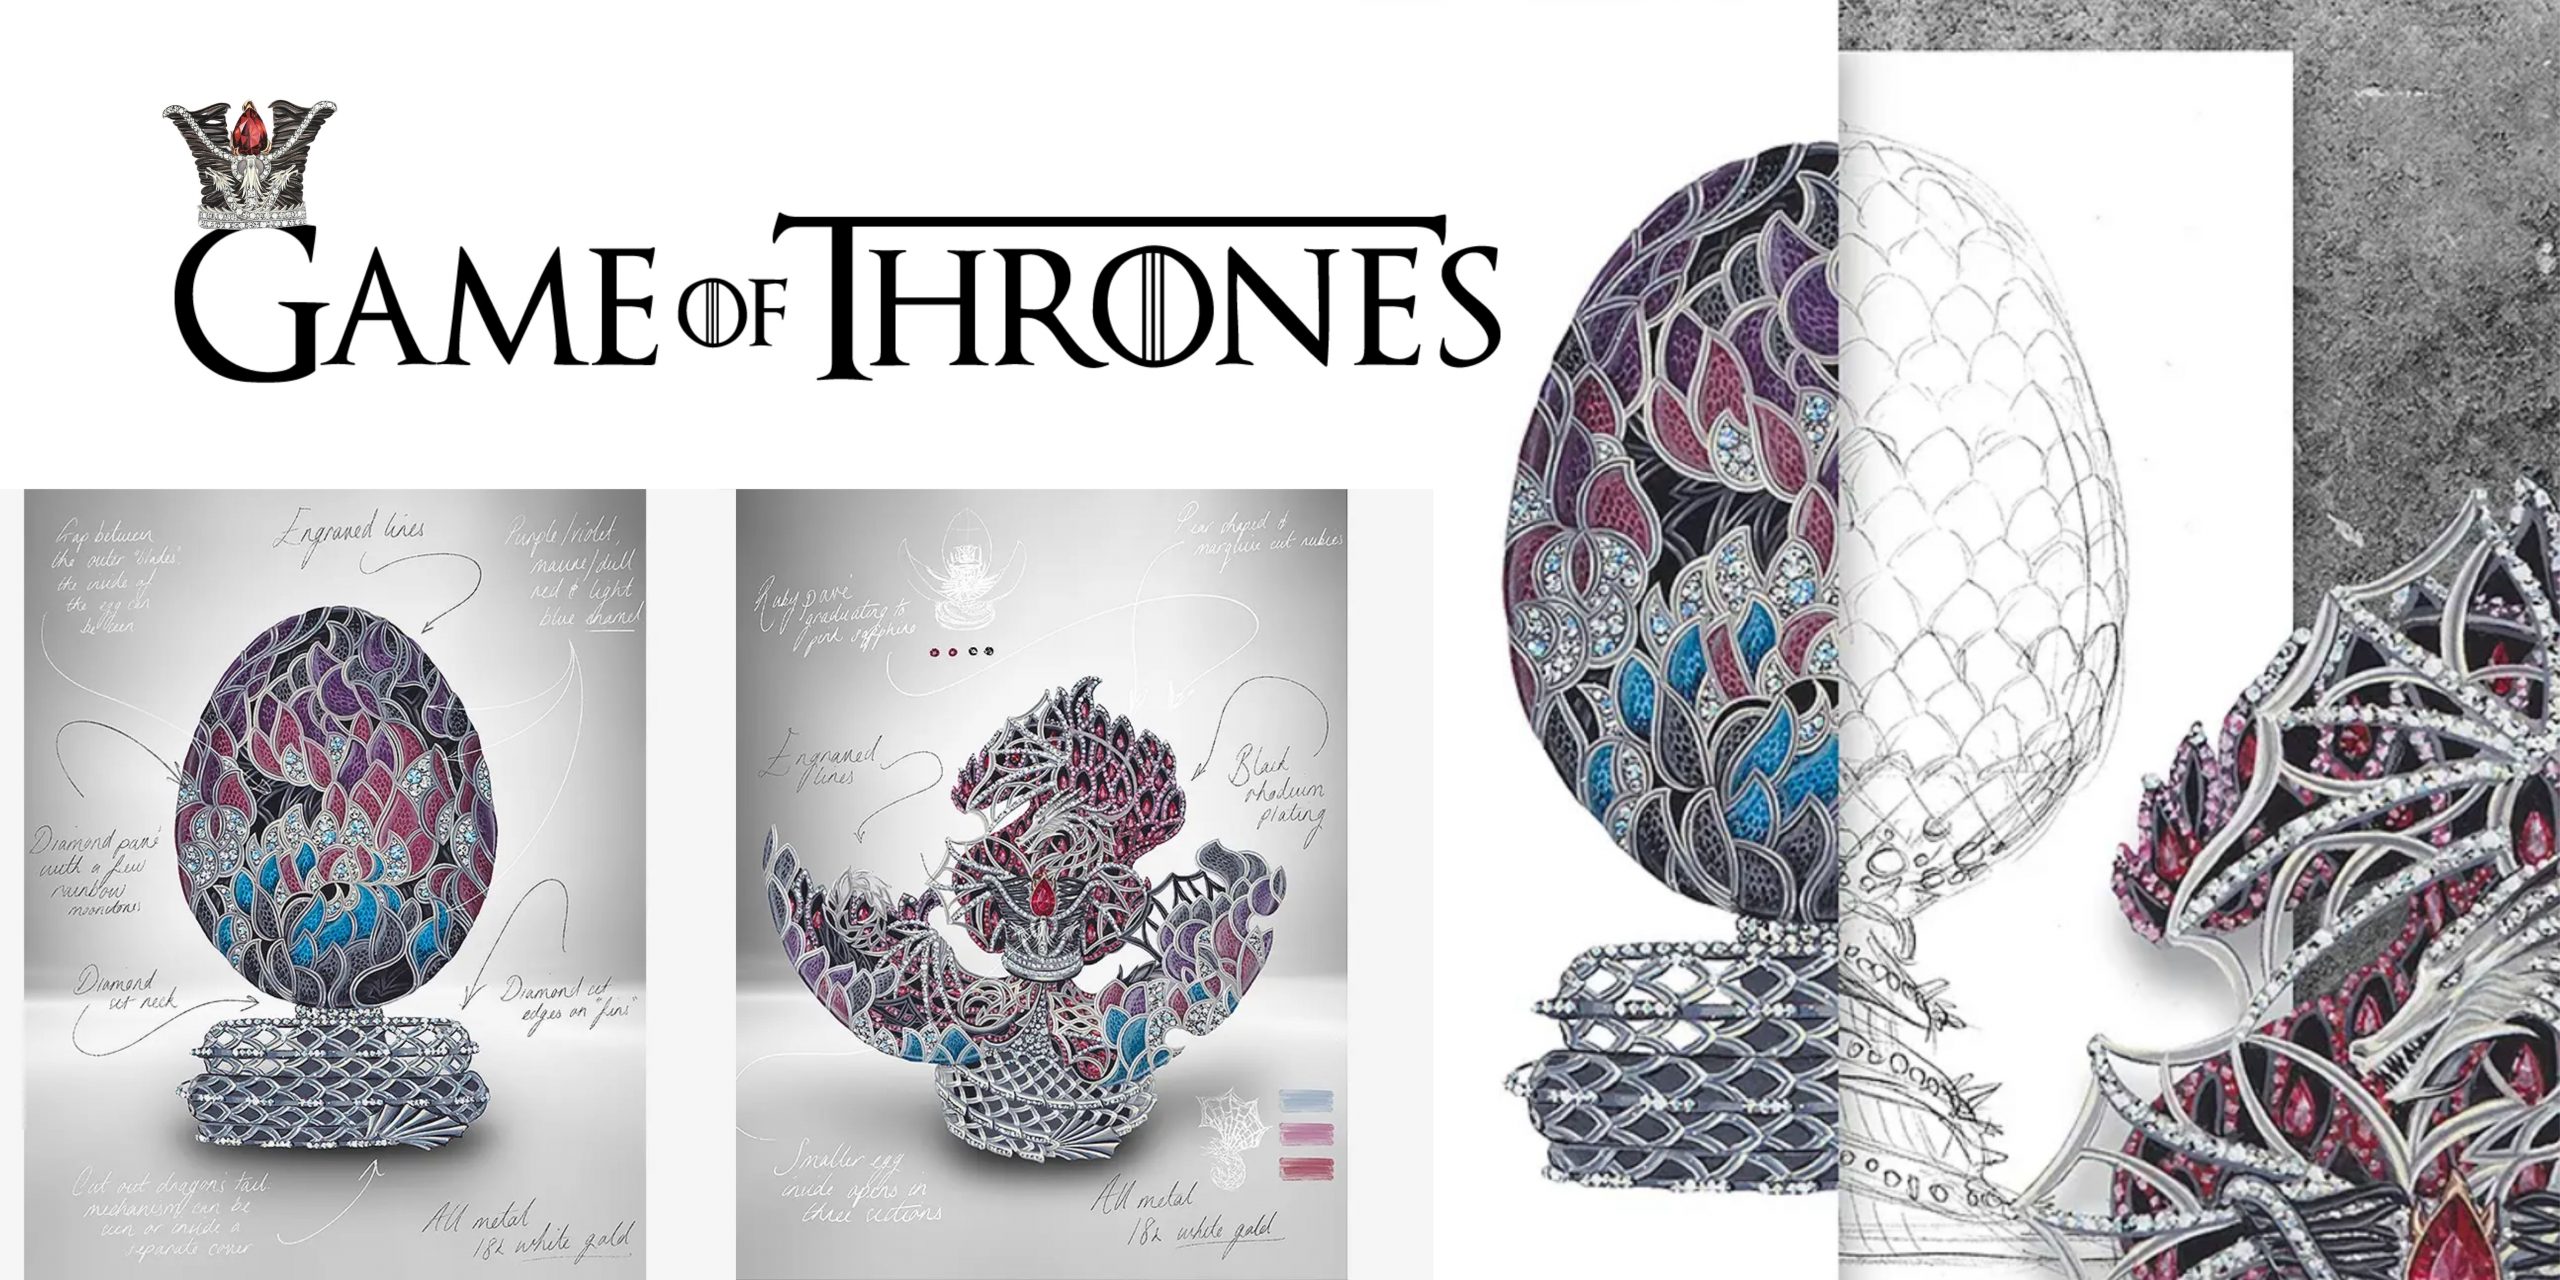 Fabergé homenageia Game Of Thrones com joia que vale milhões